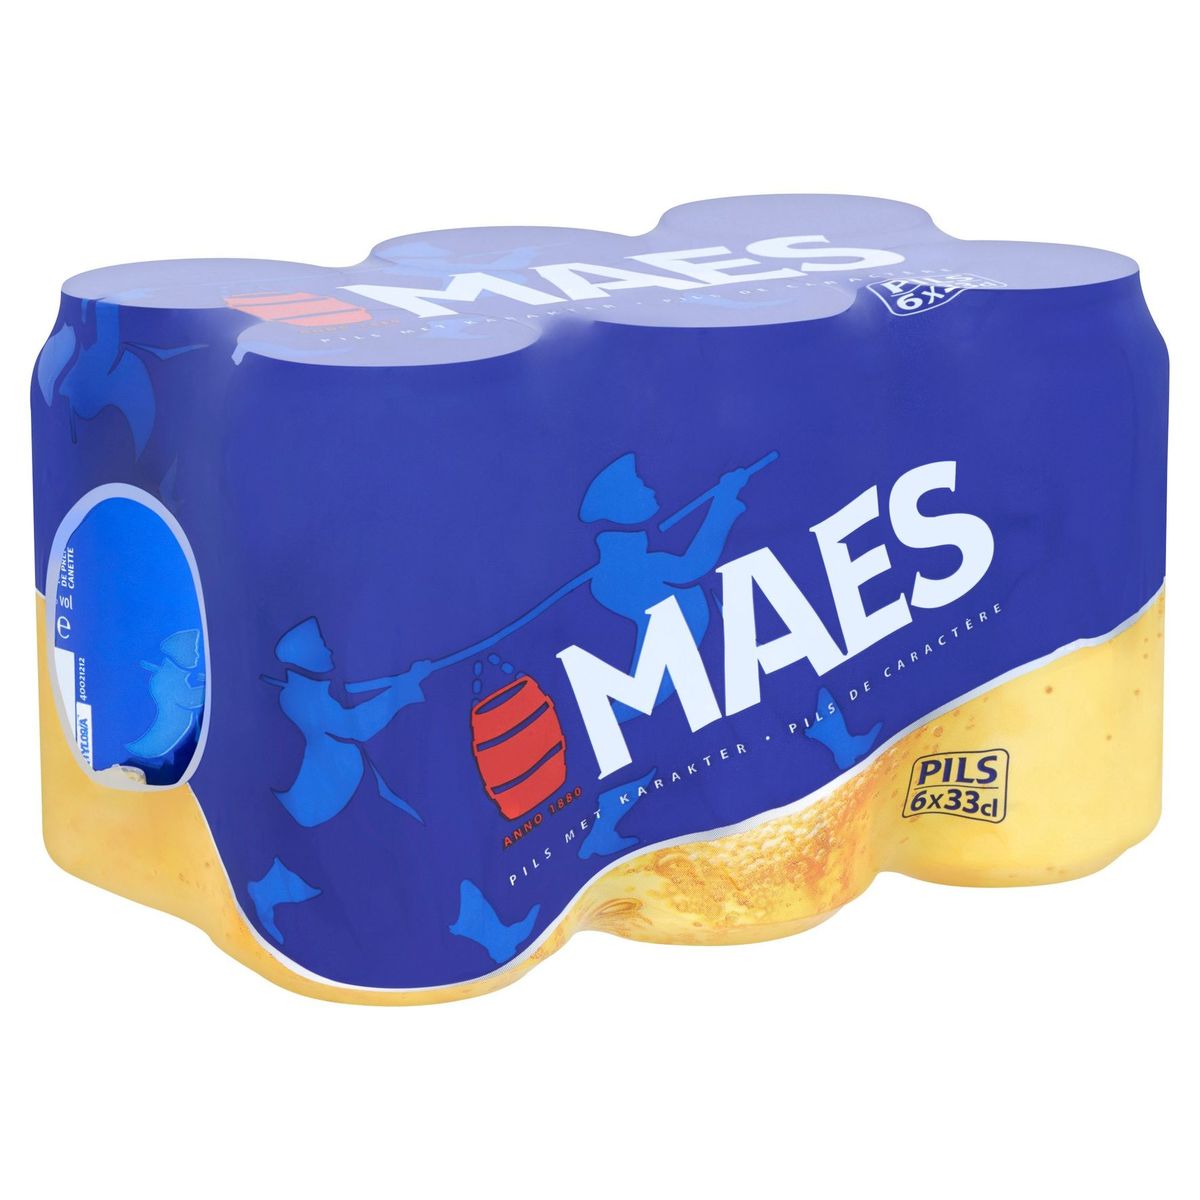 Maes Bière blonde Pils 5.2% ALC 6 x 33 cl Canette